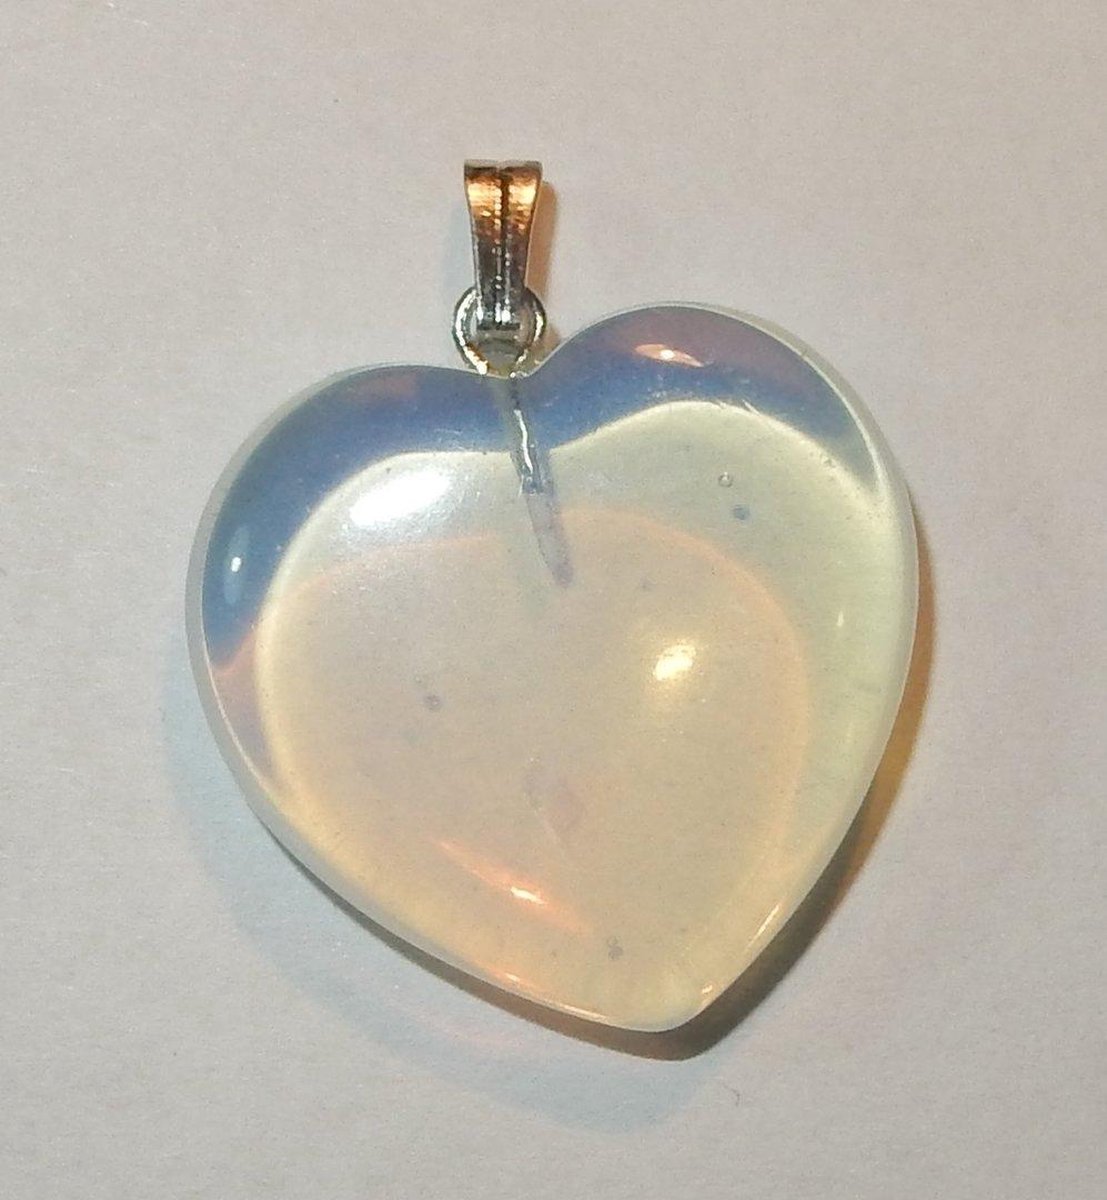 Prachtig Opaline hart van 25 mm.